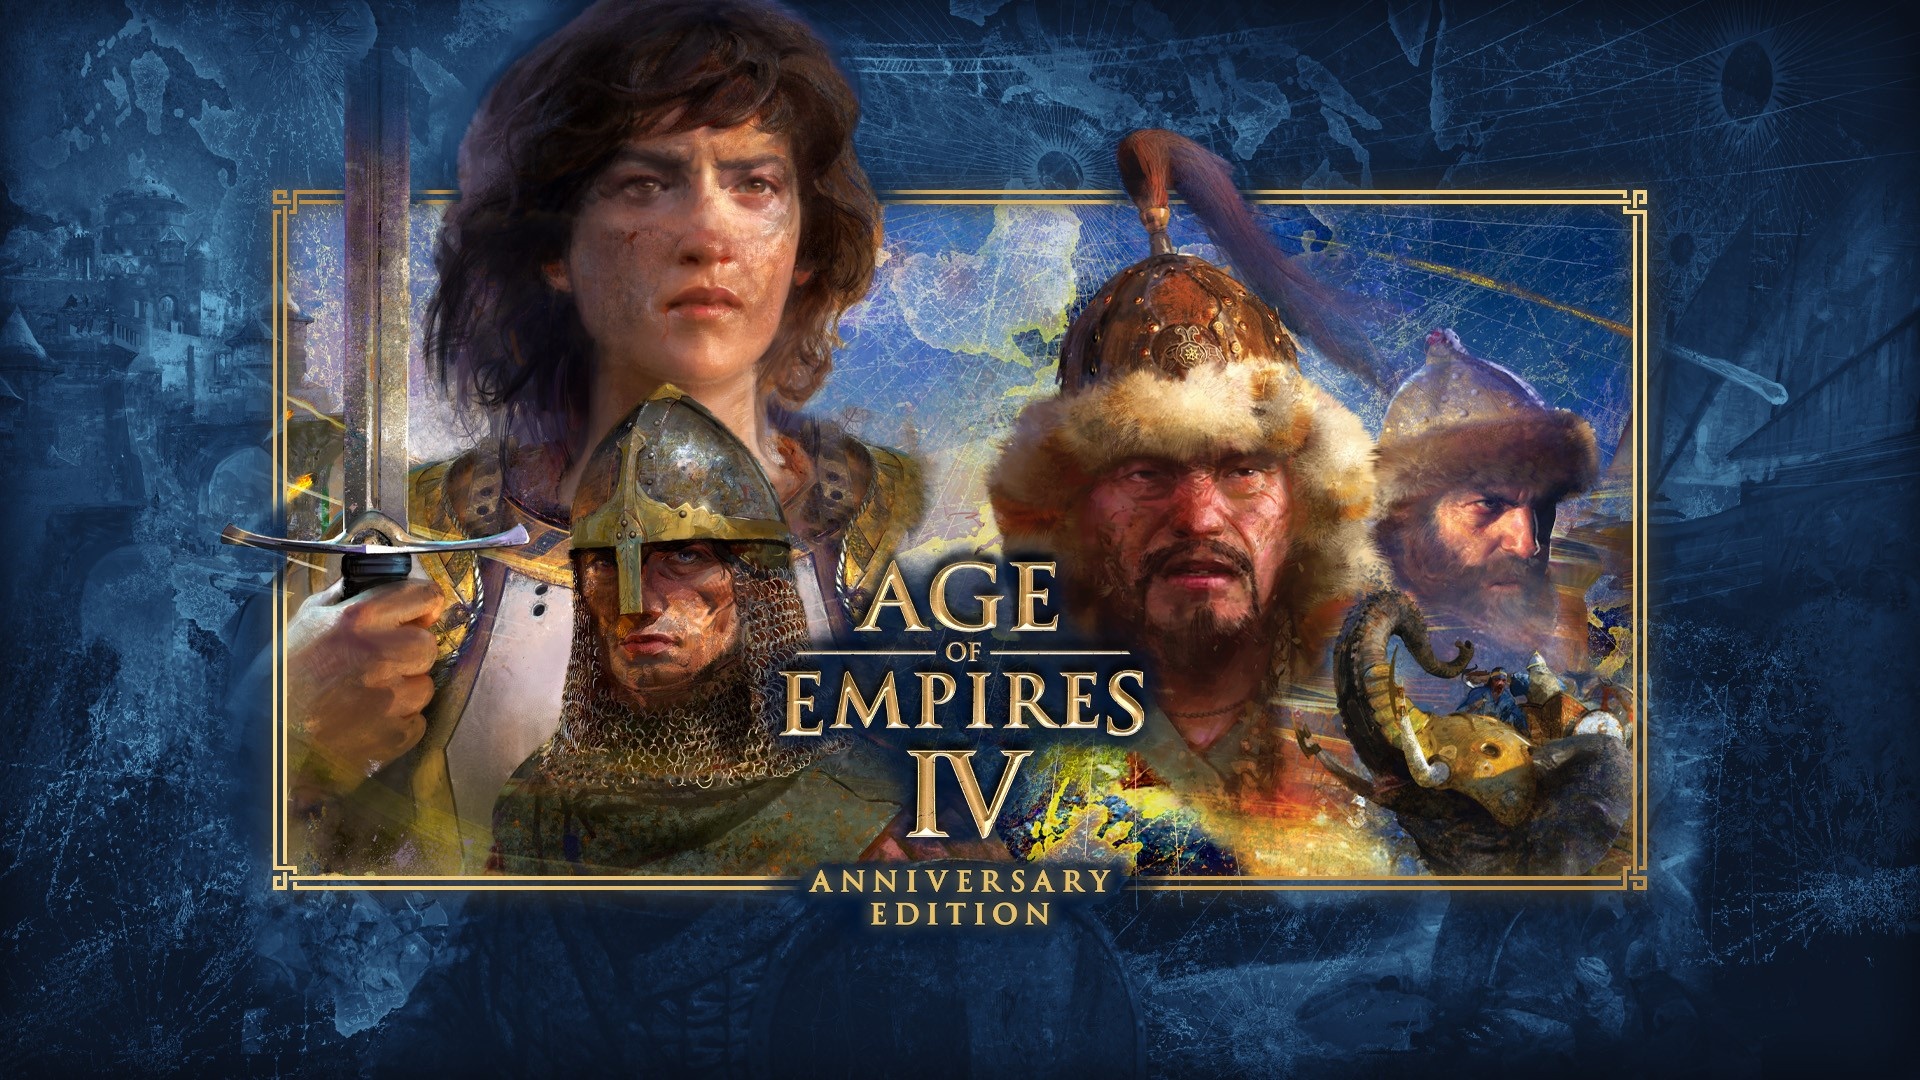 Le résumé de l’événement du 25ème anniversaire d’Age of Empires